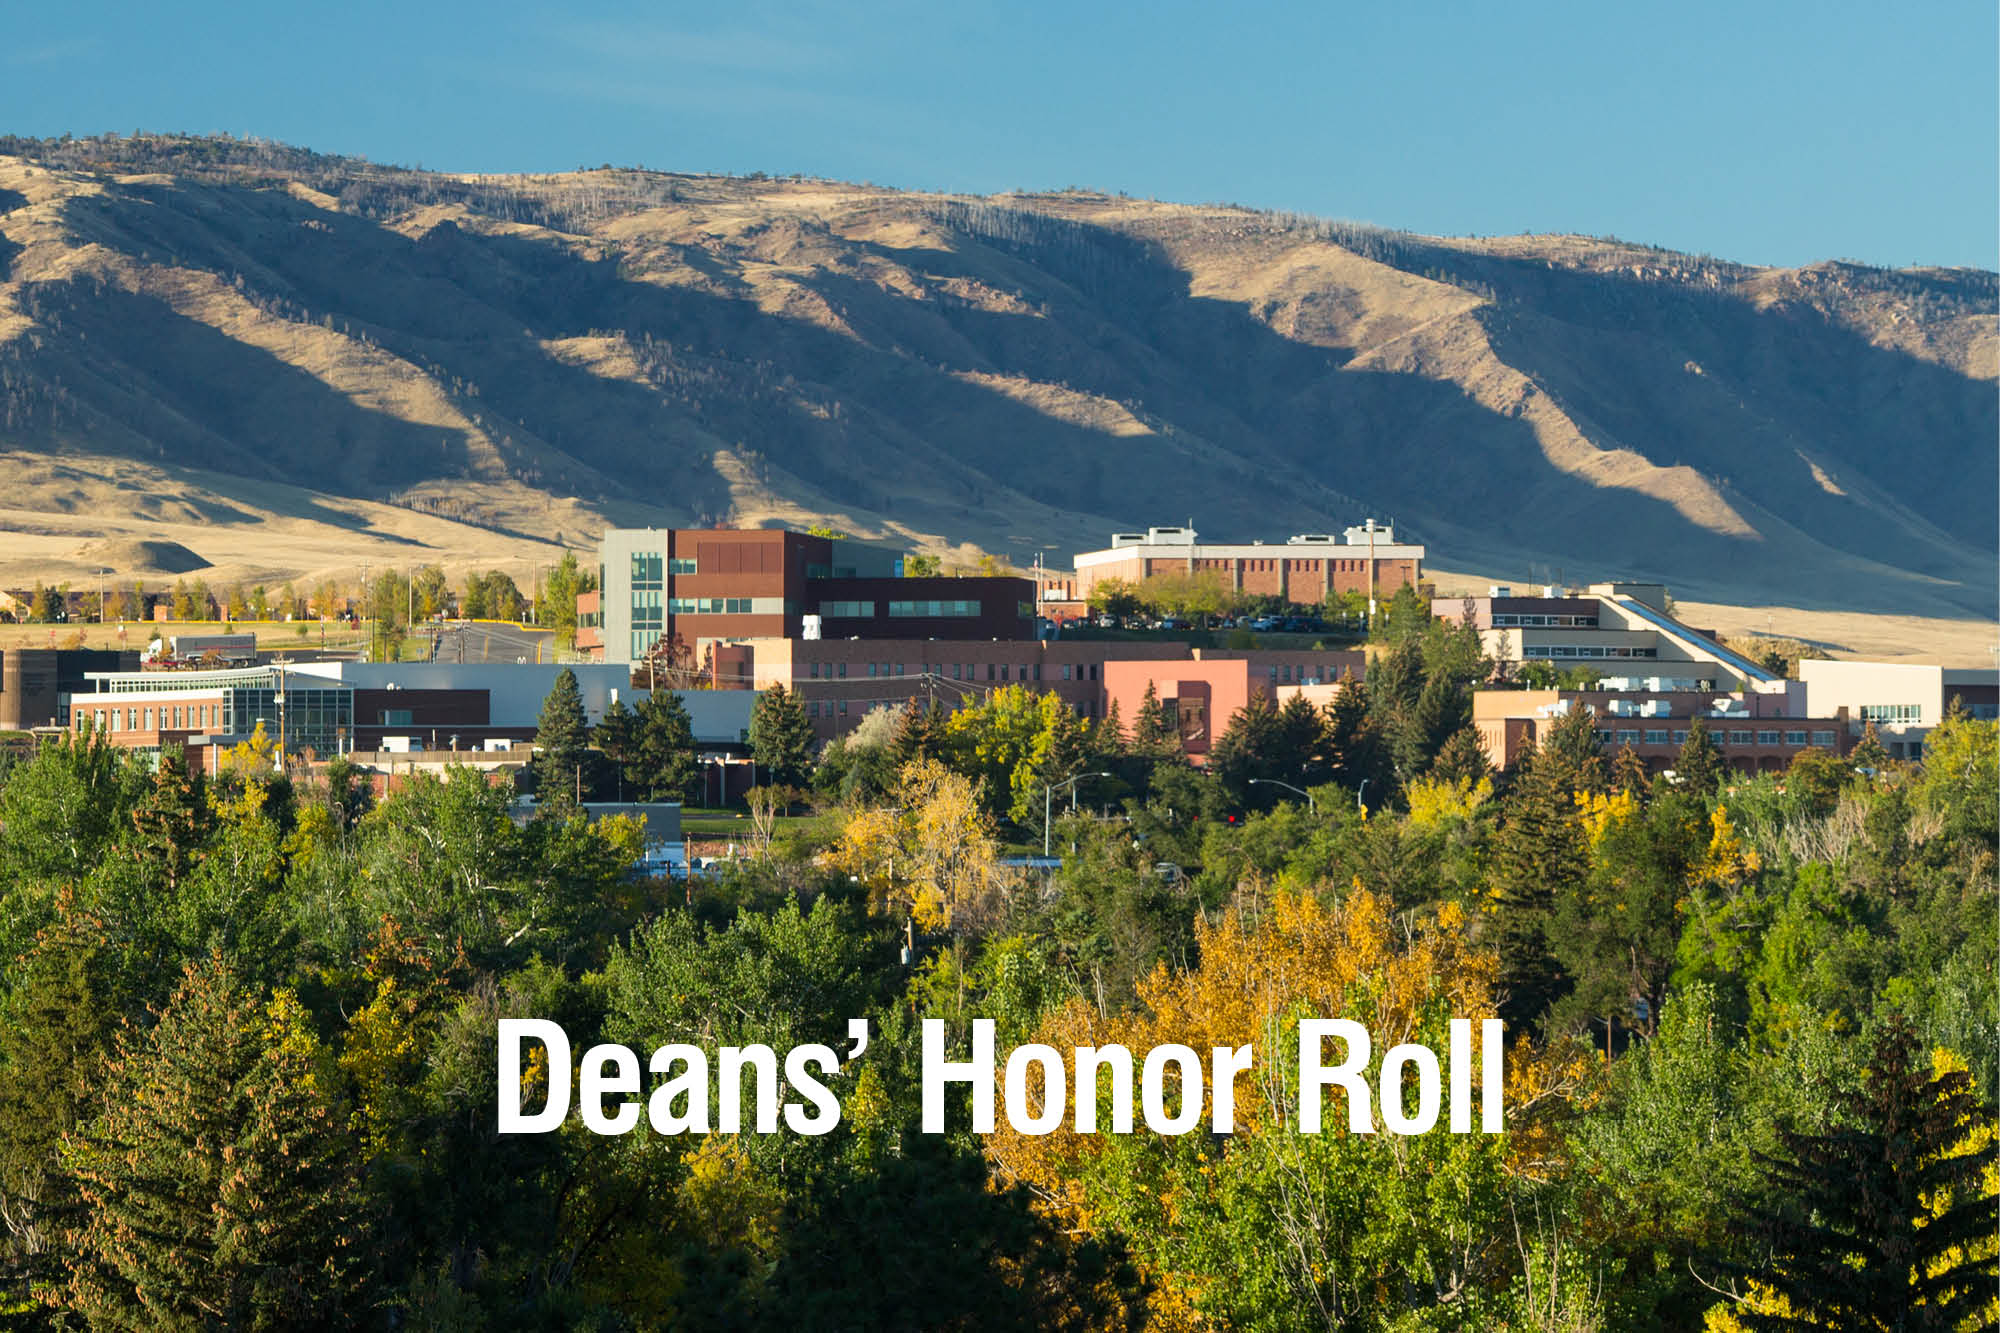 casper-college=deans-honor-roll